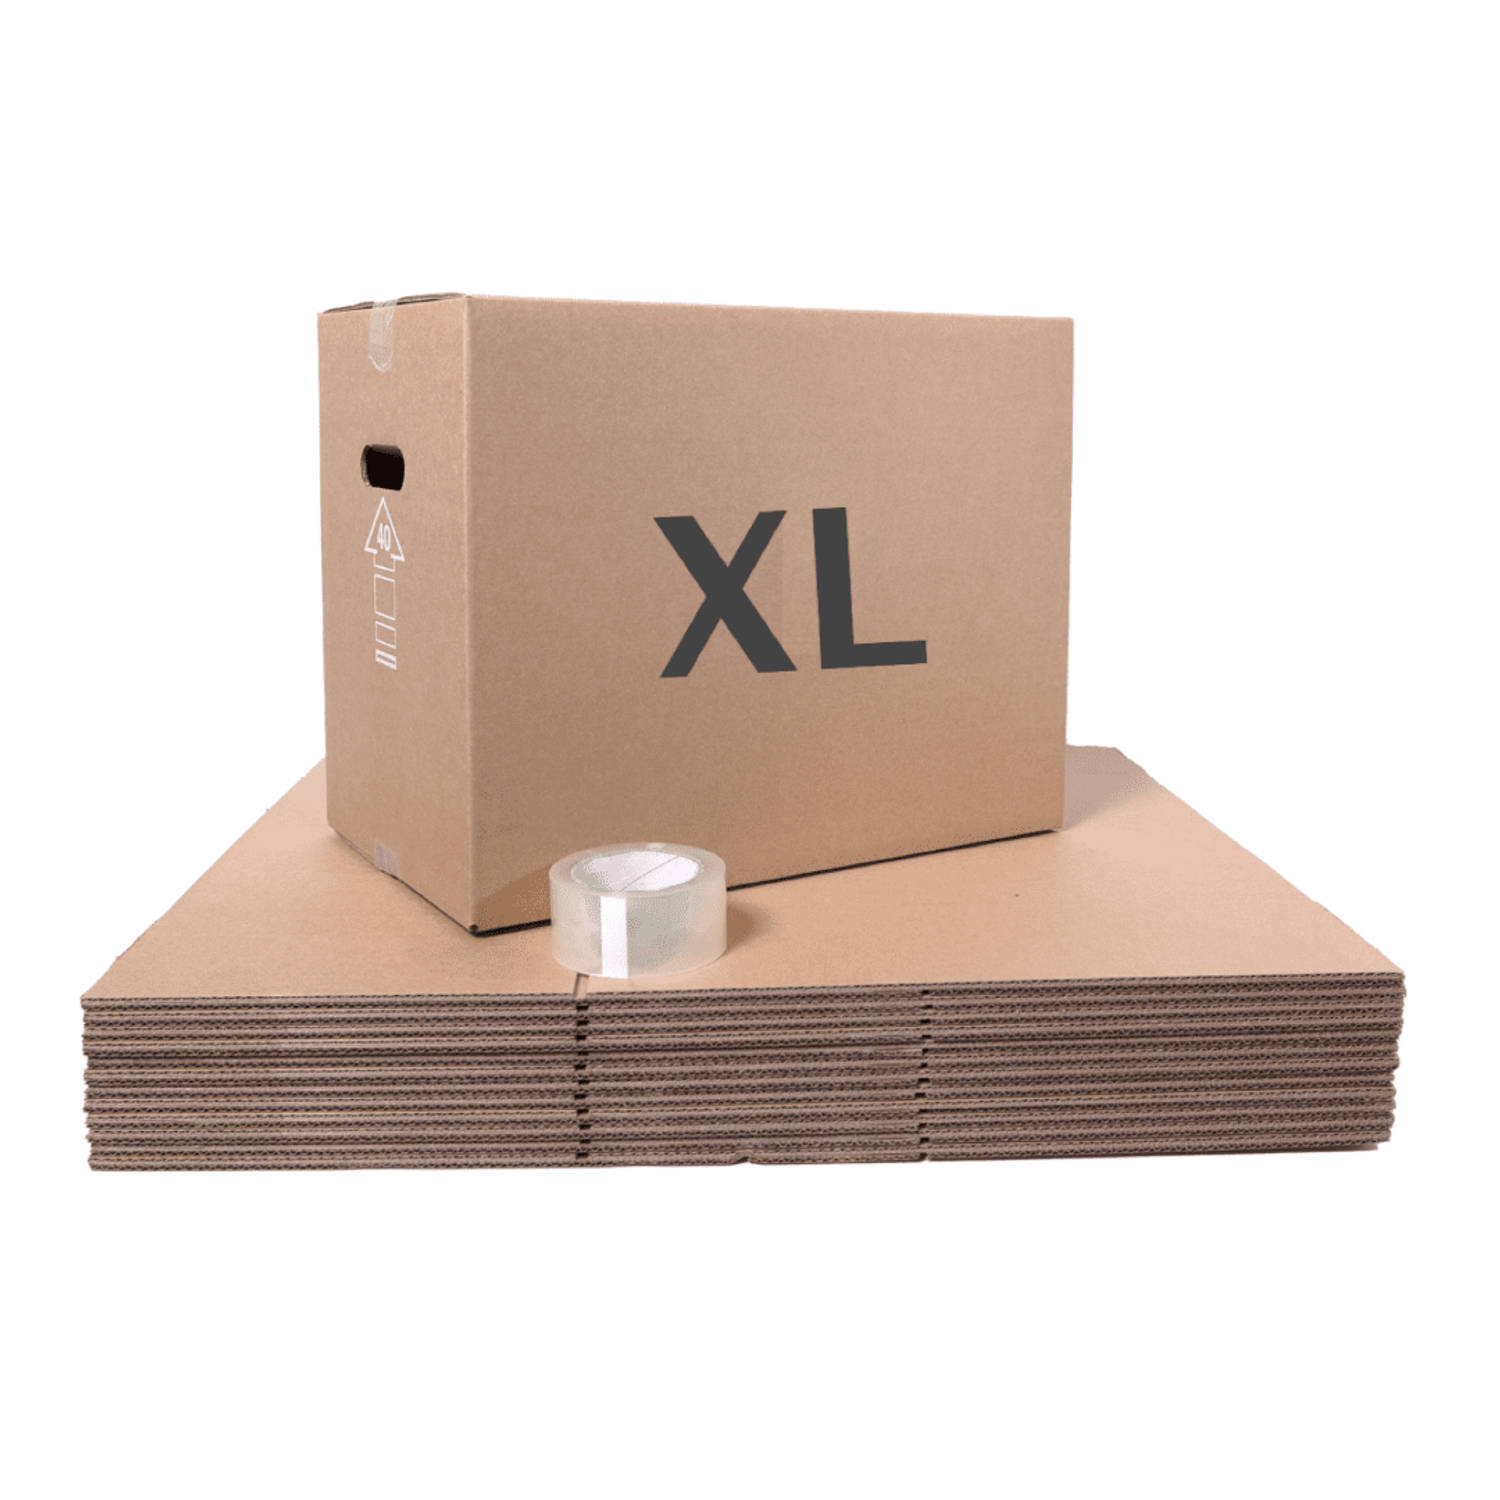 Verhuisservice+ Verhuisdozen xl - incl tape - extra sterk - 106L - 30 stuks